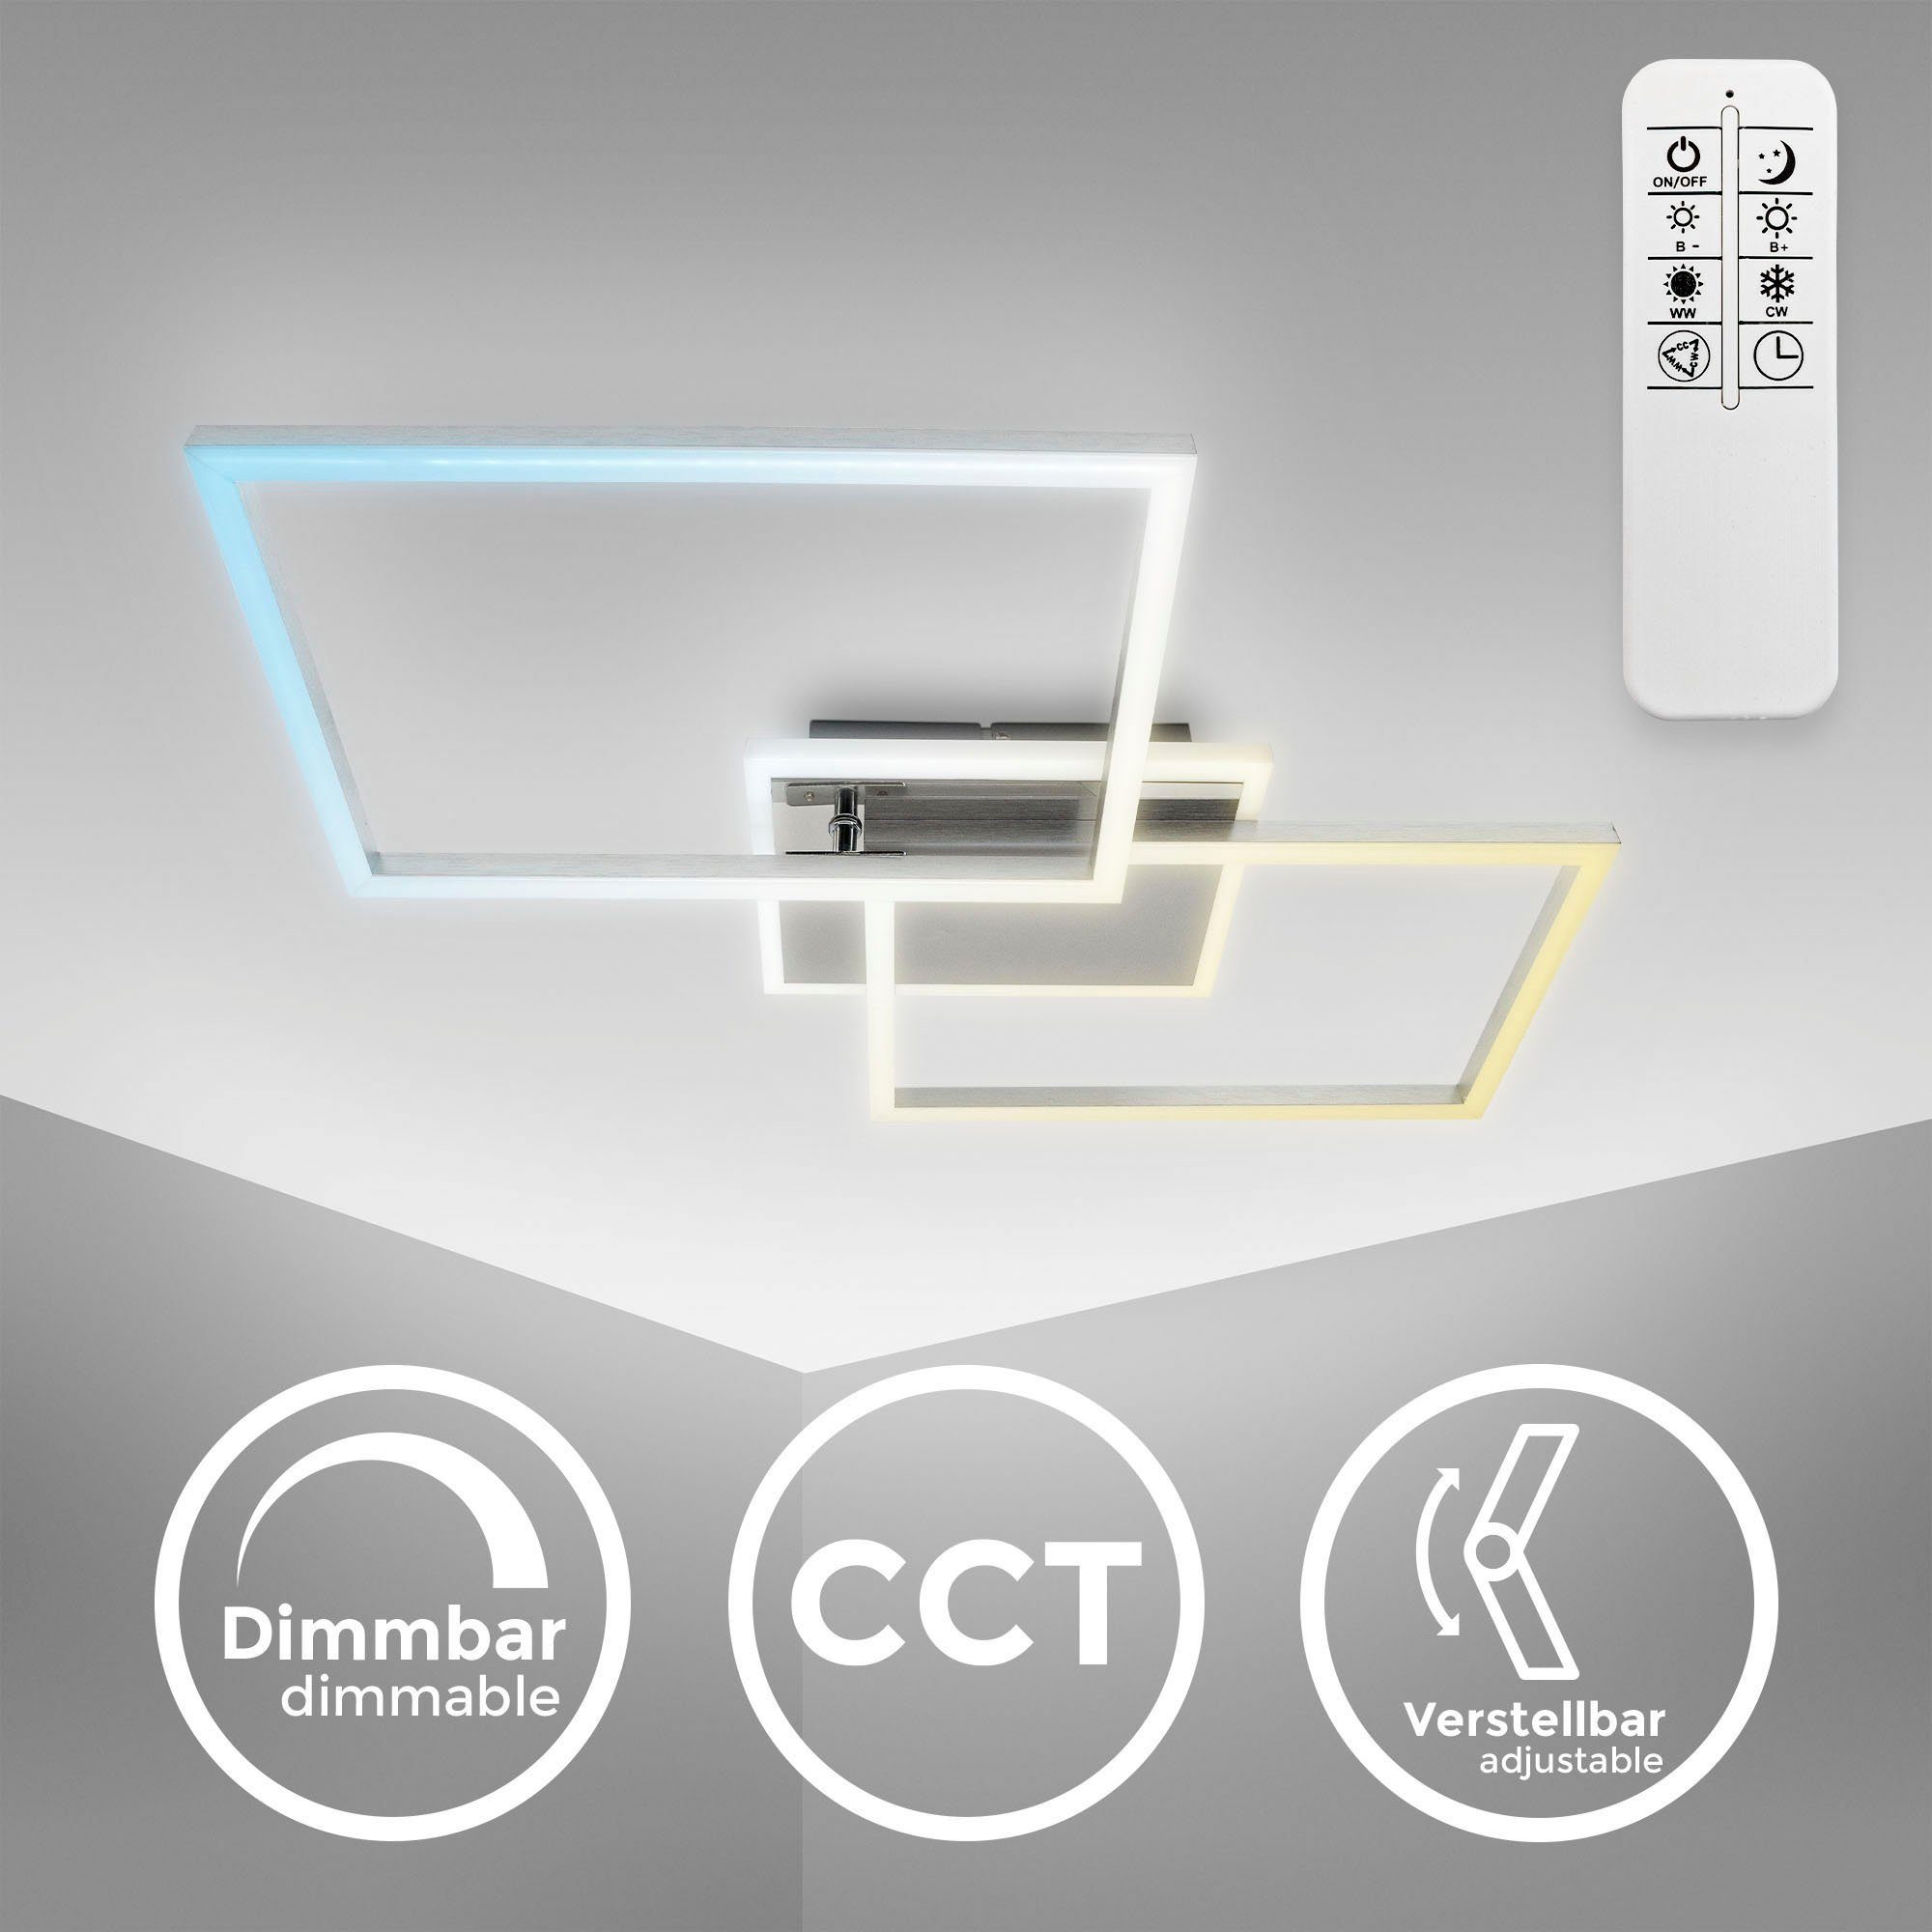 mit CCT CCT Dimmbar, - Nachtlichtfunktion, warmweiß LED-Deckenlampe, einstellbar, LED Fernbedienung, BK_FR1440 über Alu - integriert, B.K.Licht 40W, fest Schwenkbar, Timer, Farbtemperatur Fernbedienung, Deckenleuchte kaltweiß, LED